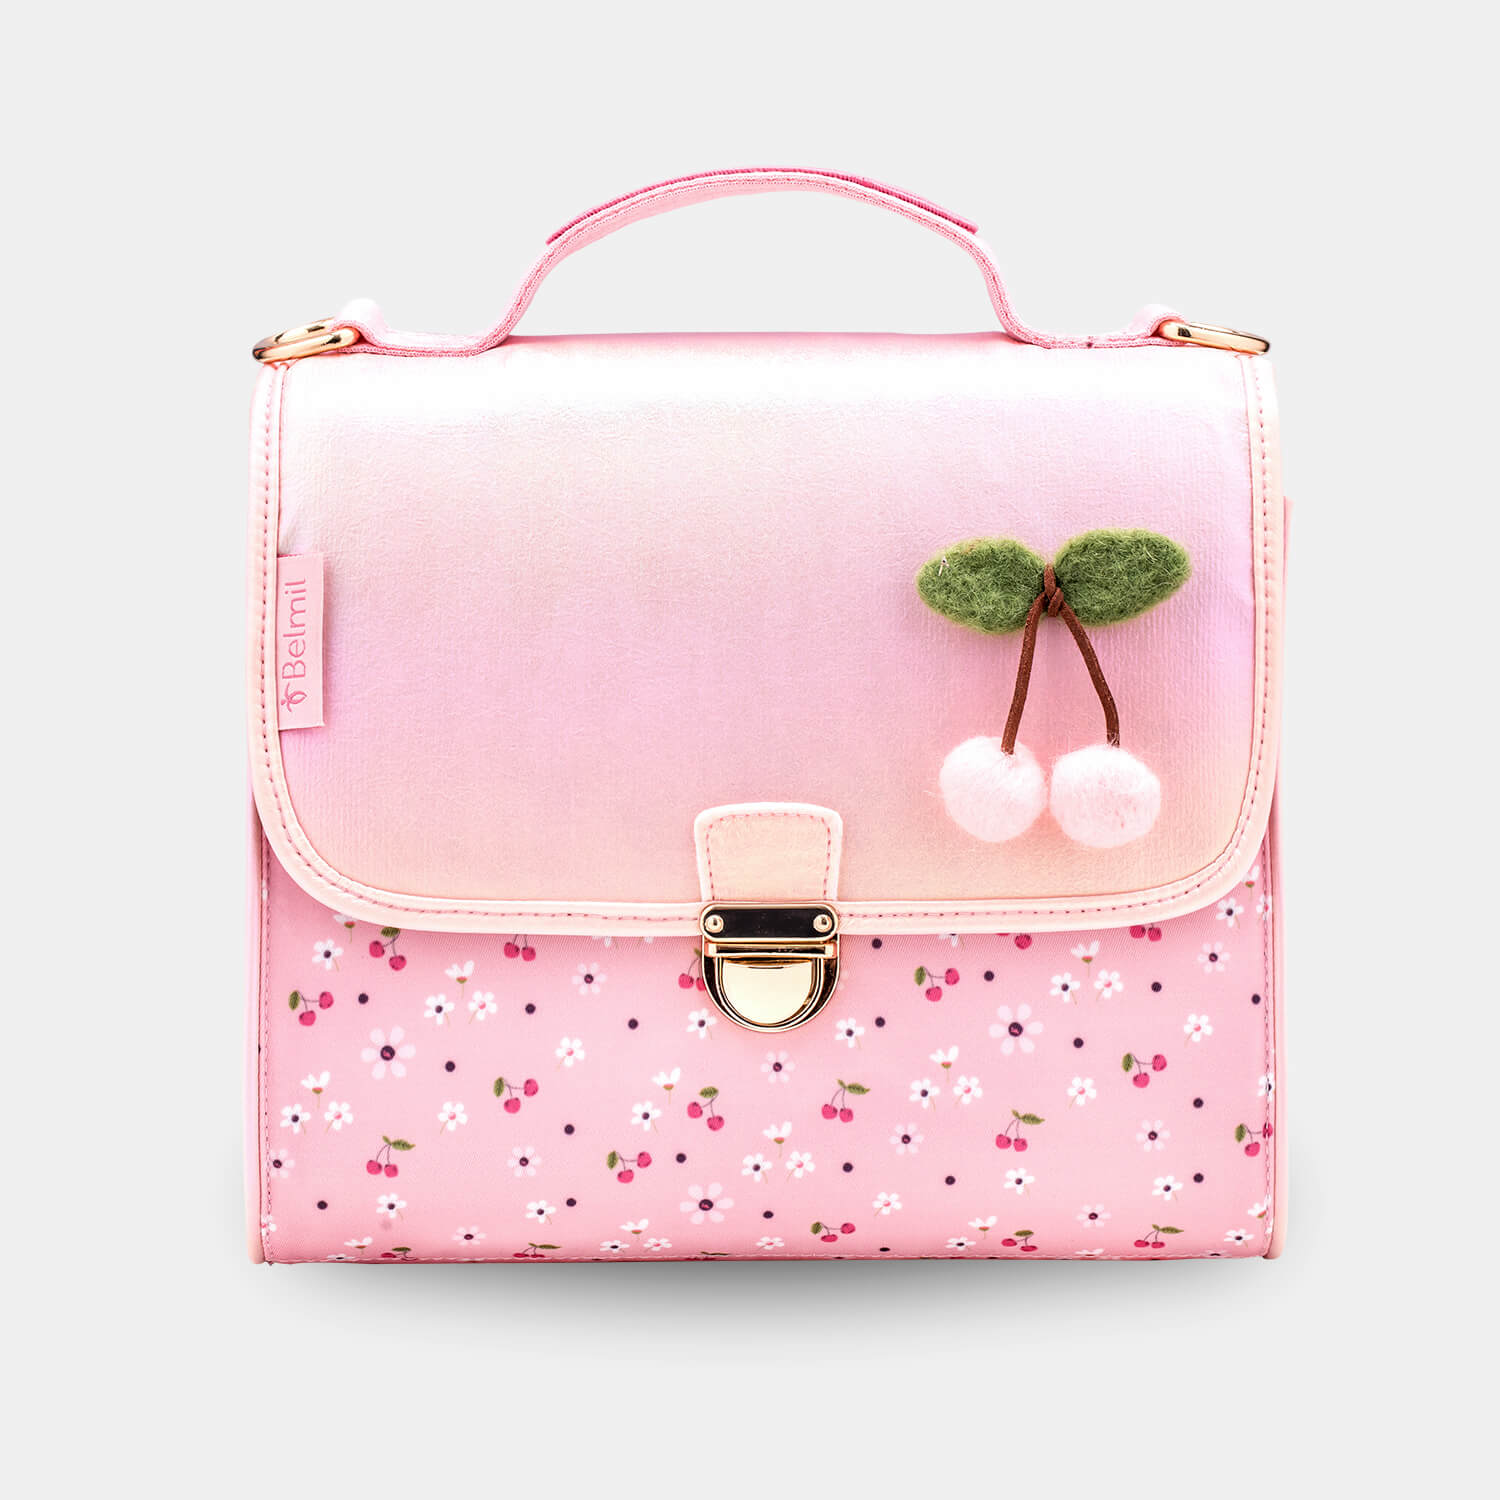 Petite Premium Shoulder bag Cherry Blossom with GRATIS Gym bag